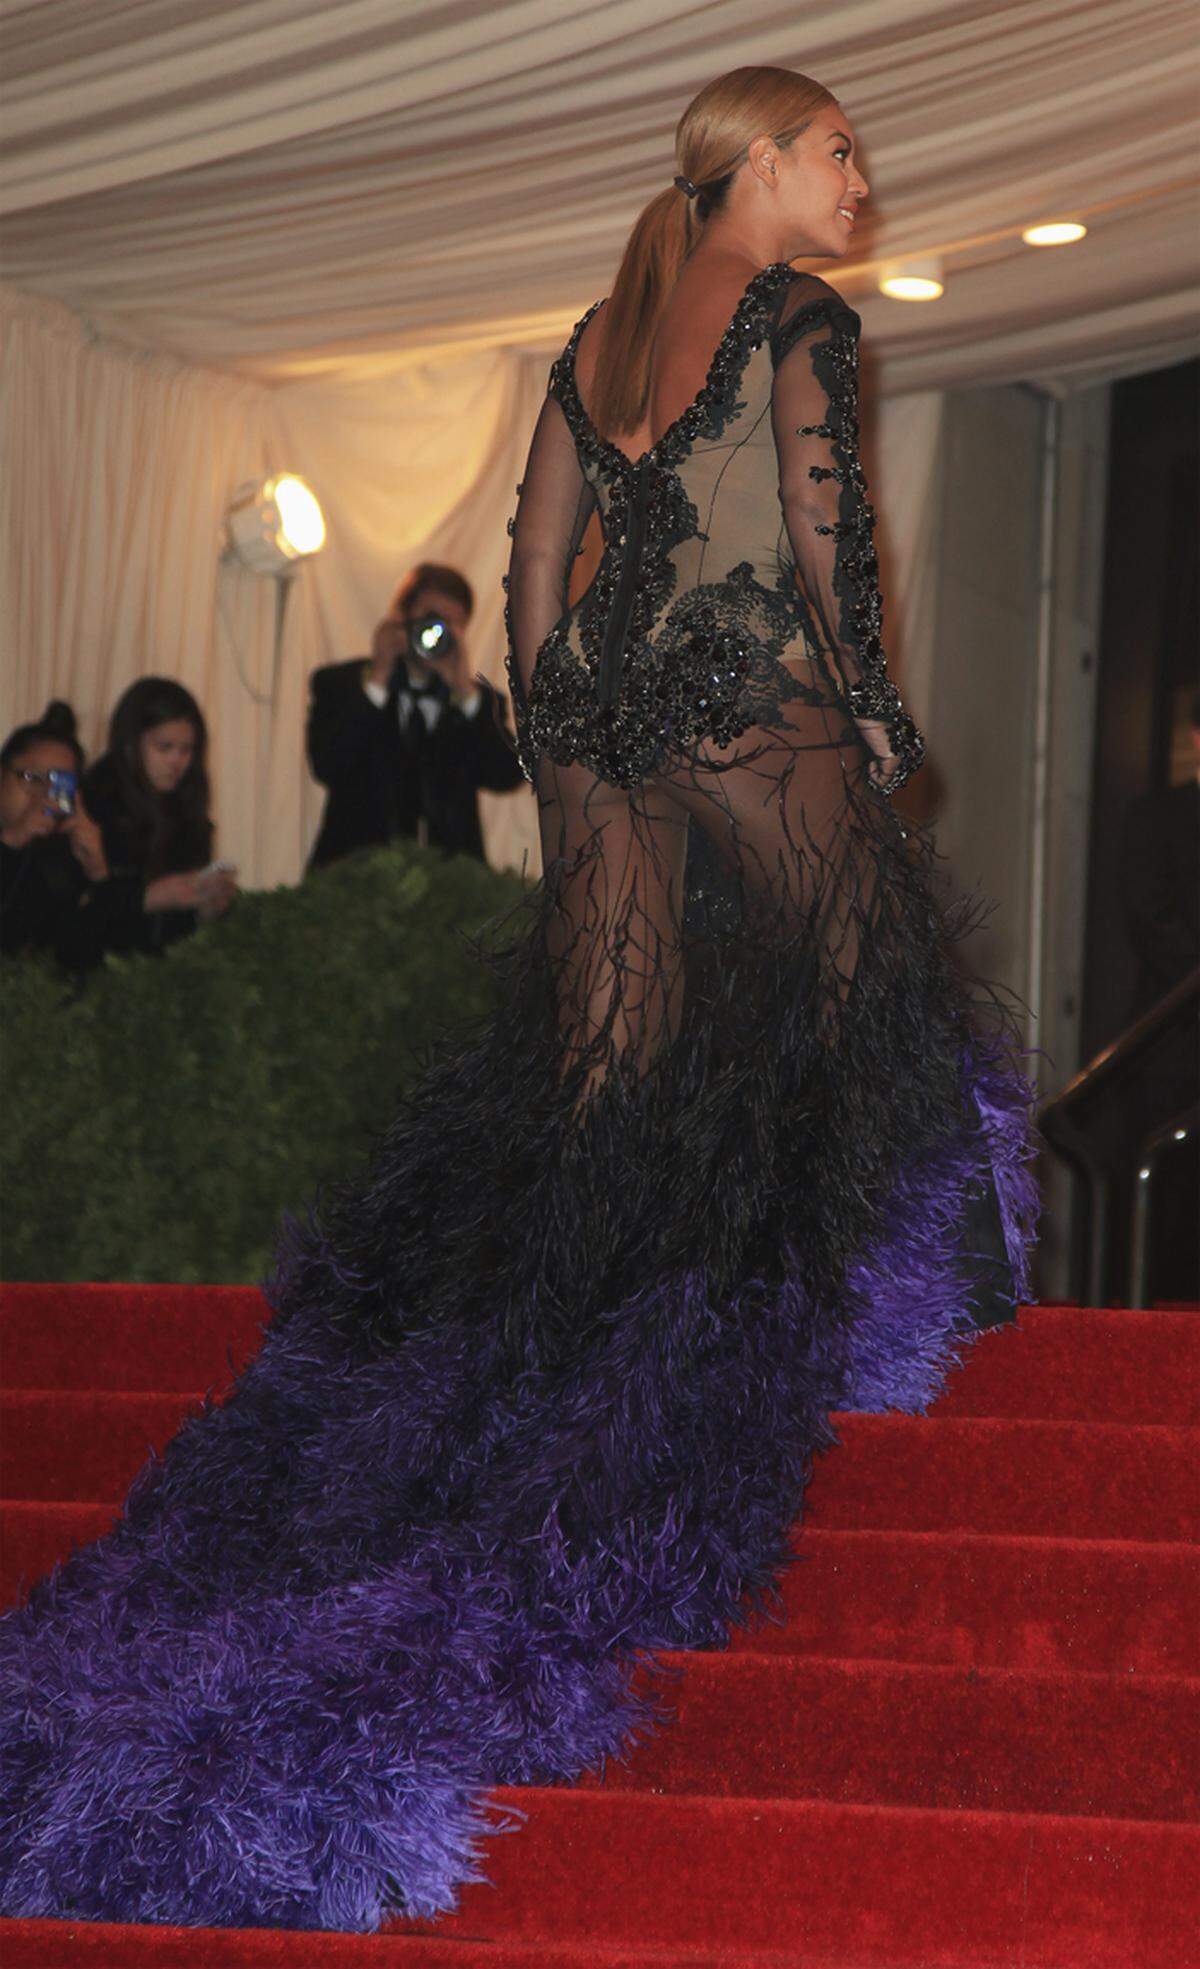 Treppen können sowohl bei engen Kleidern zum Problem werden, als auch bei tief geschnittenen und transparenten. Diese Erfahrung musste bereits Beyonce machen.